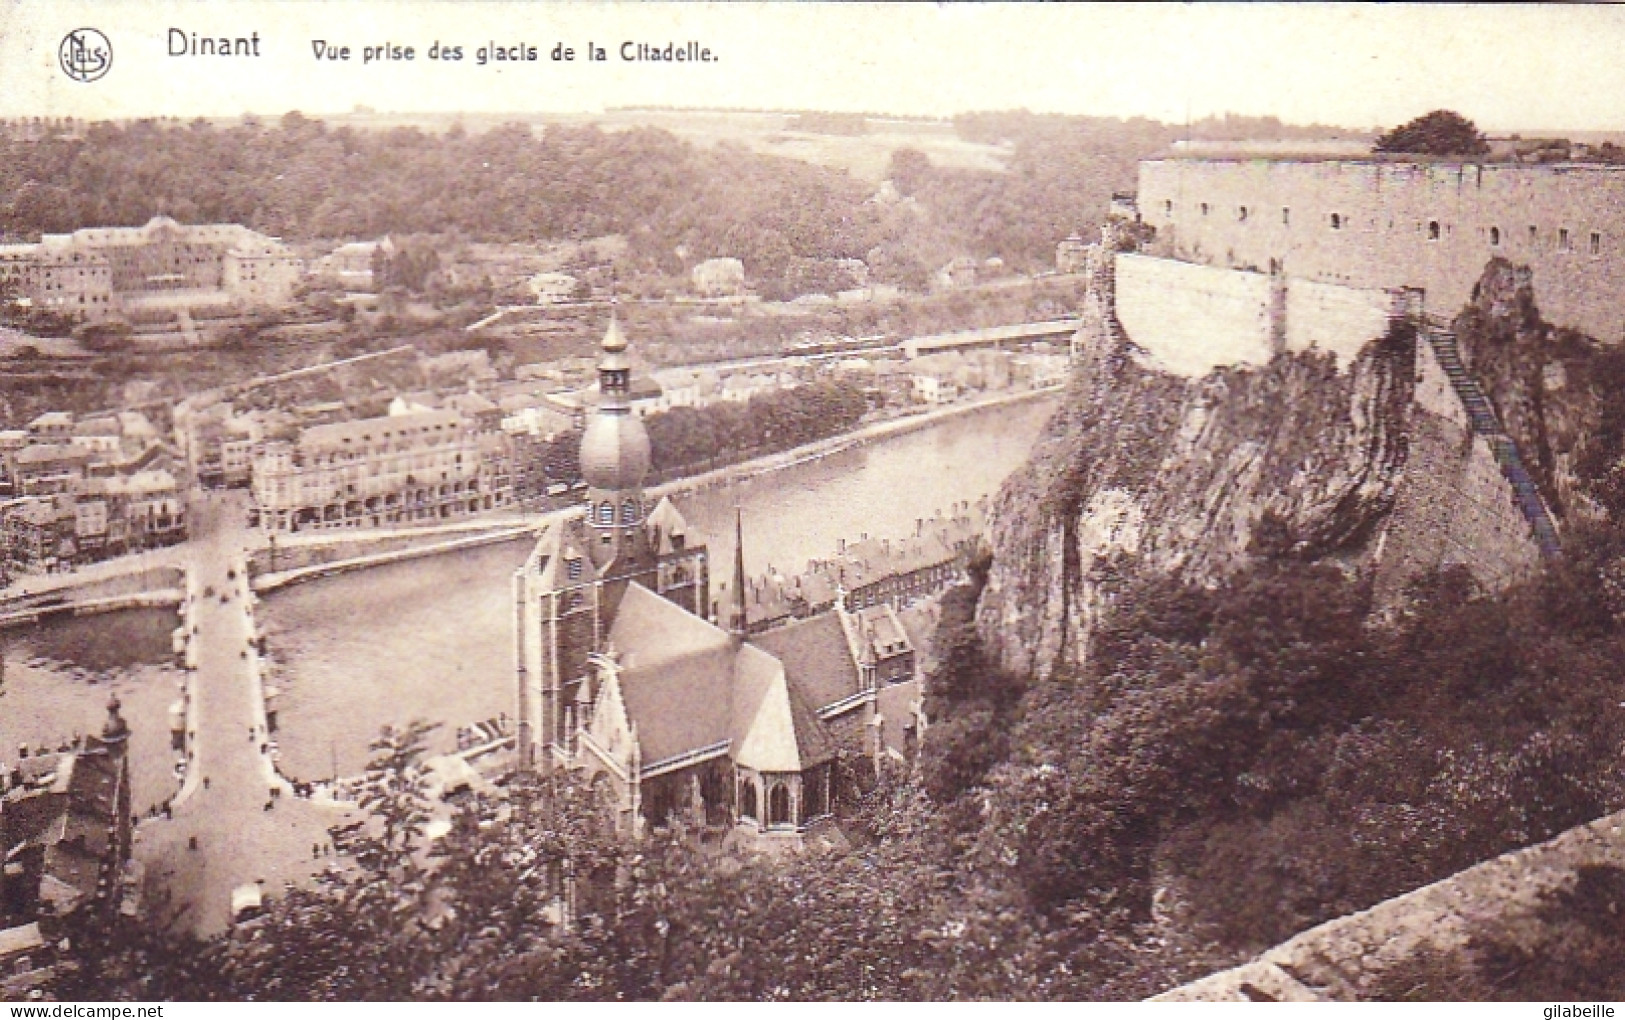 DINANT - Vue Prise Des Glacis De La Citadelle - Dinant